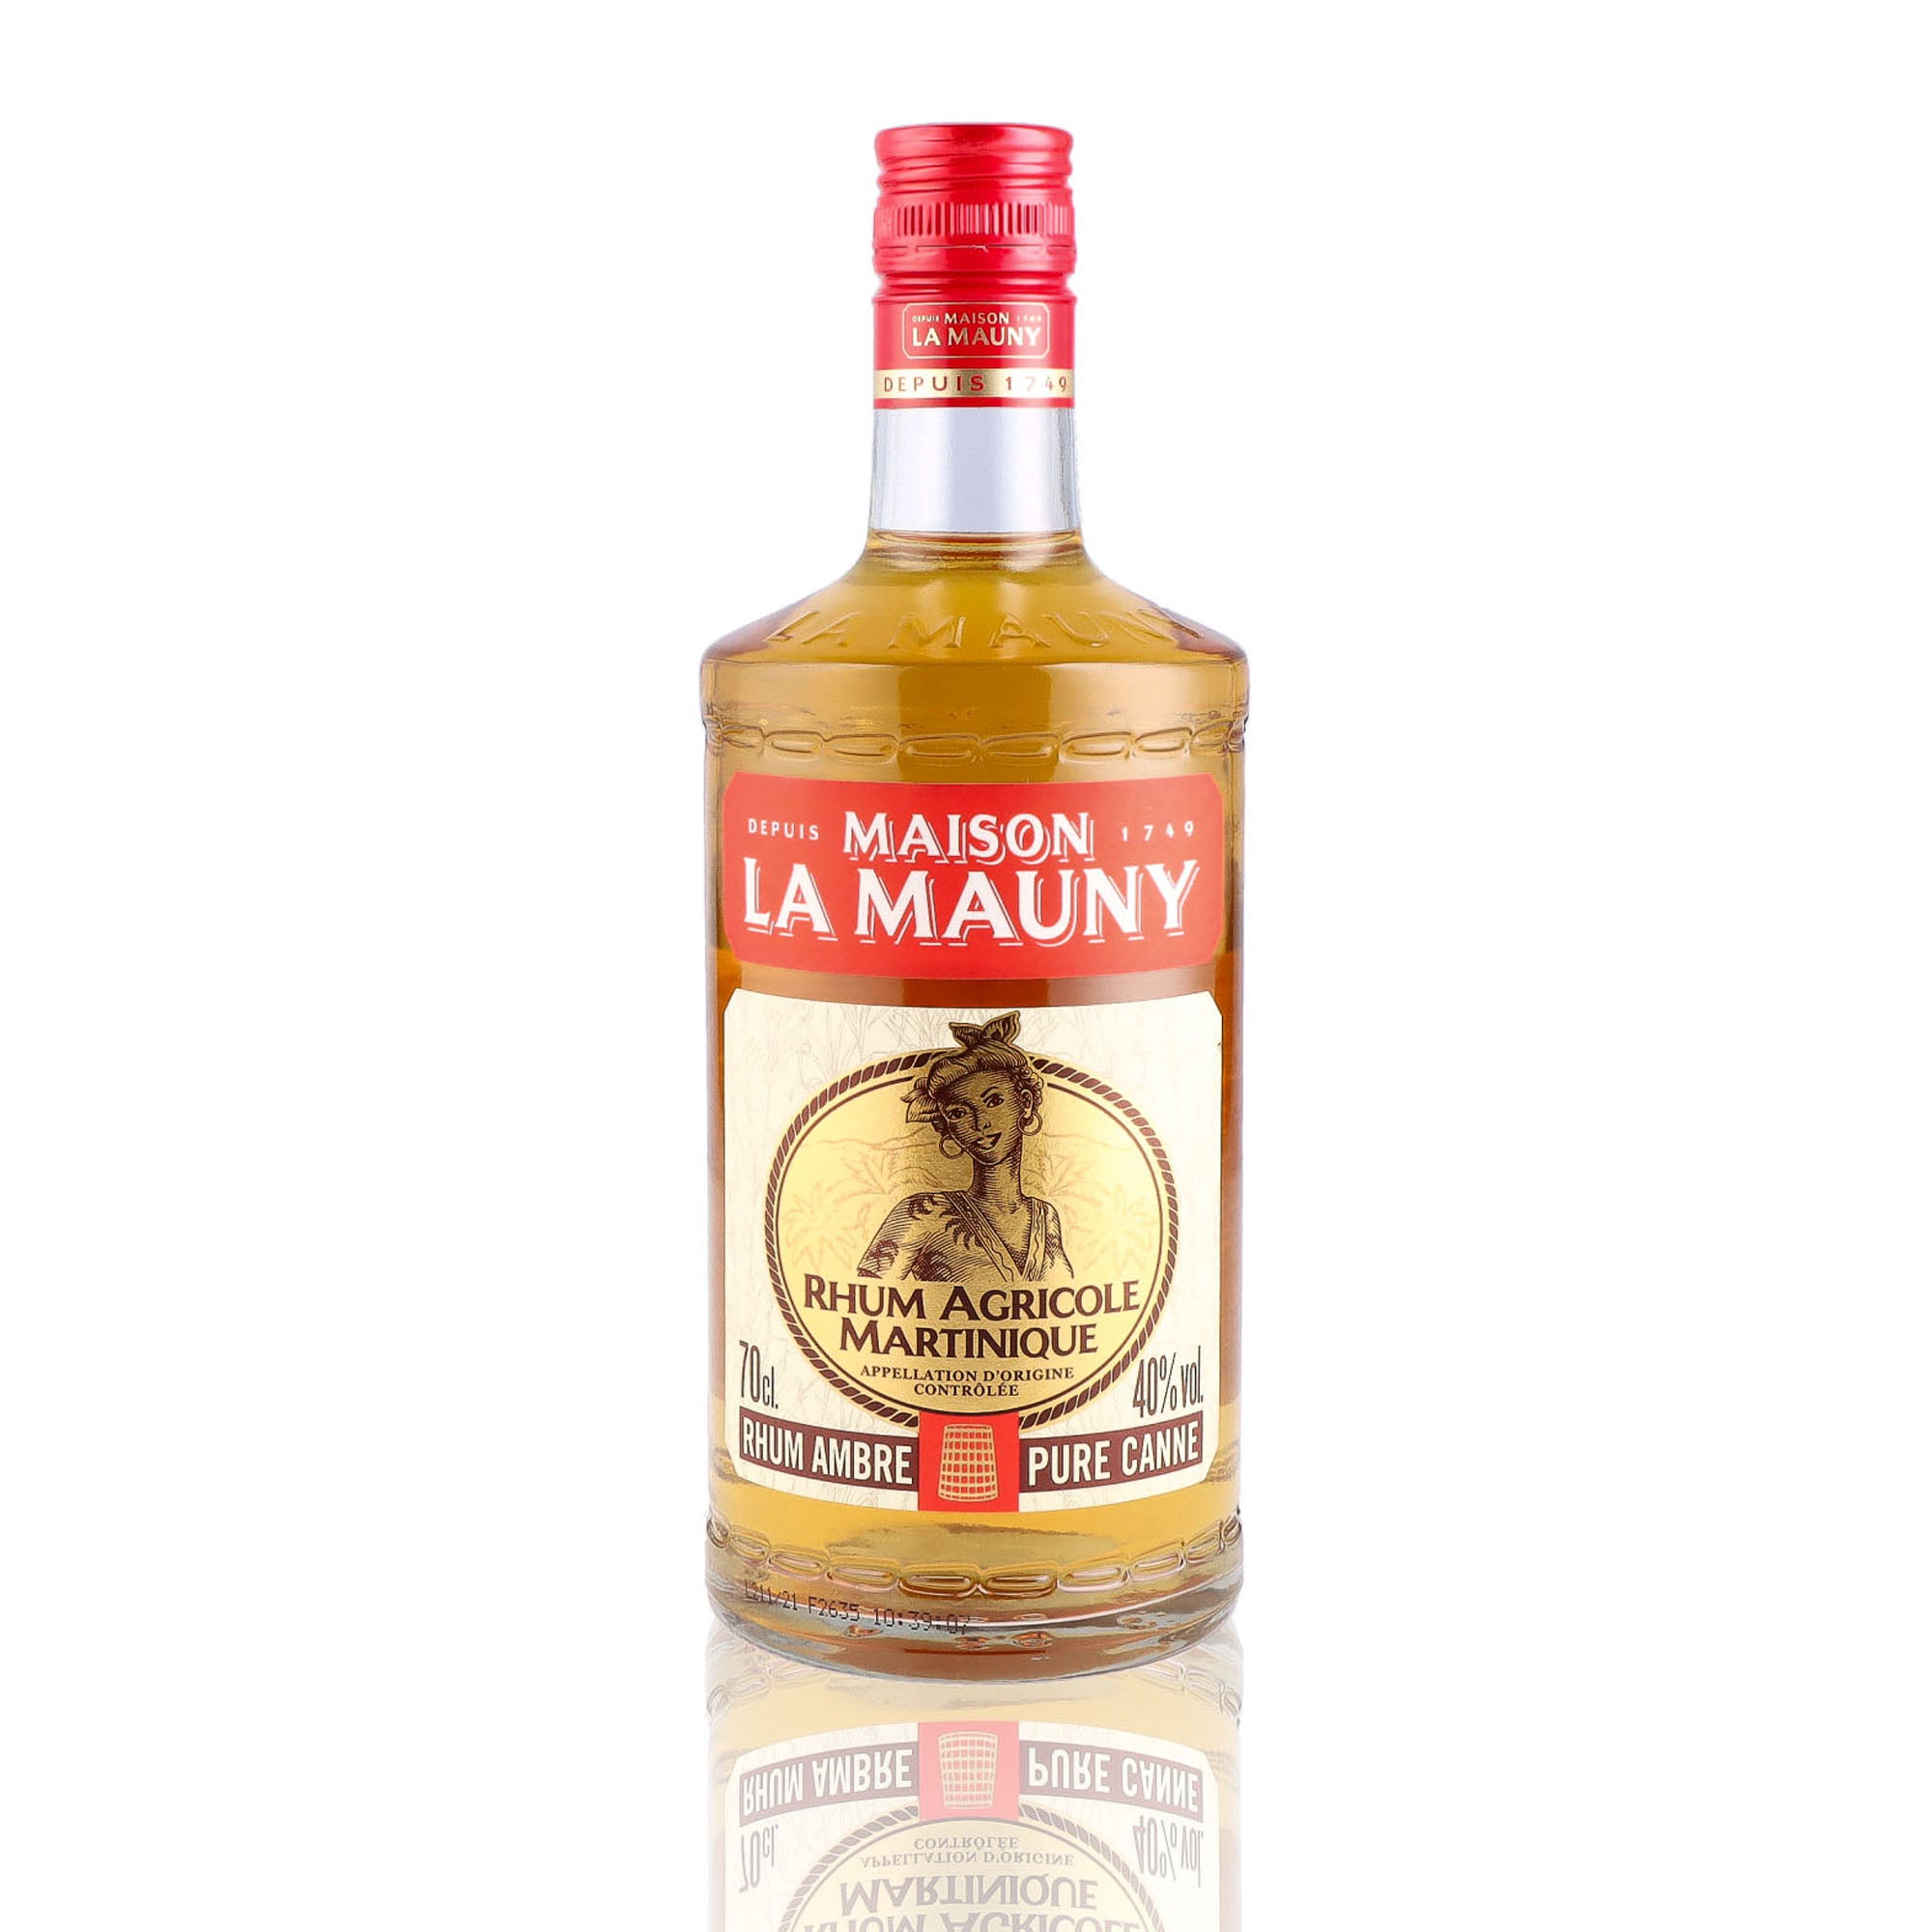 Une bouteille de rhum ambré, de la marque La Mauny, nommée pure canne.